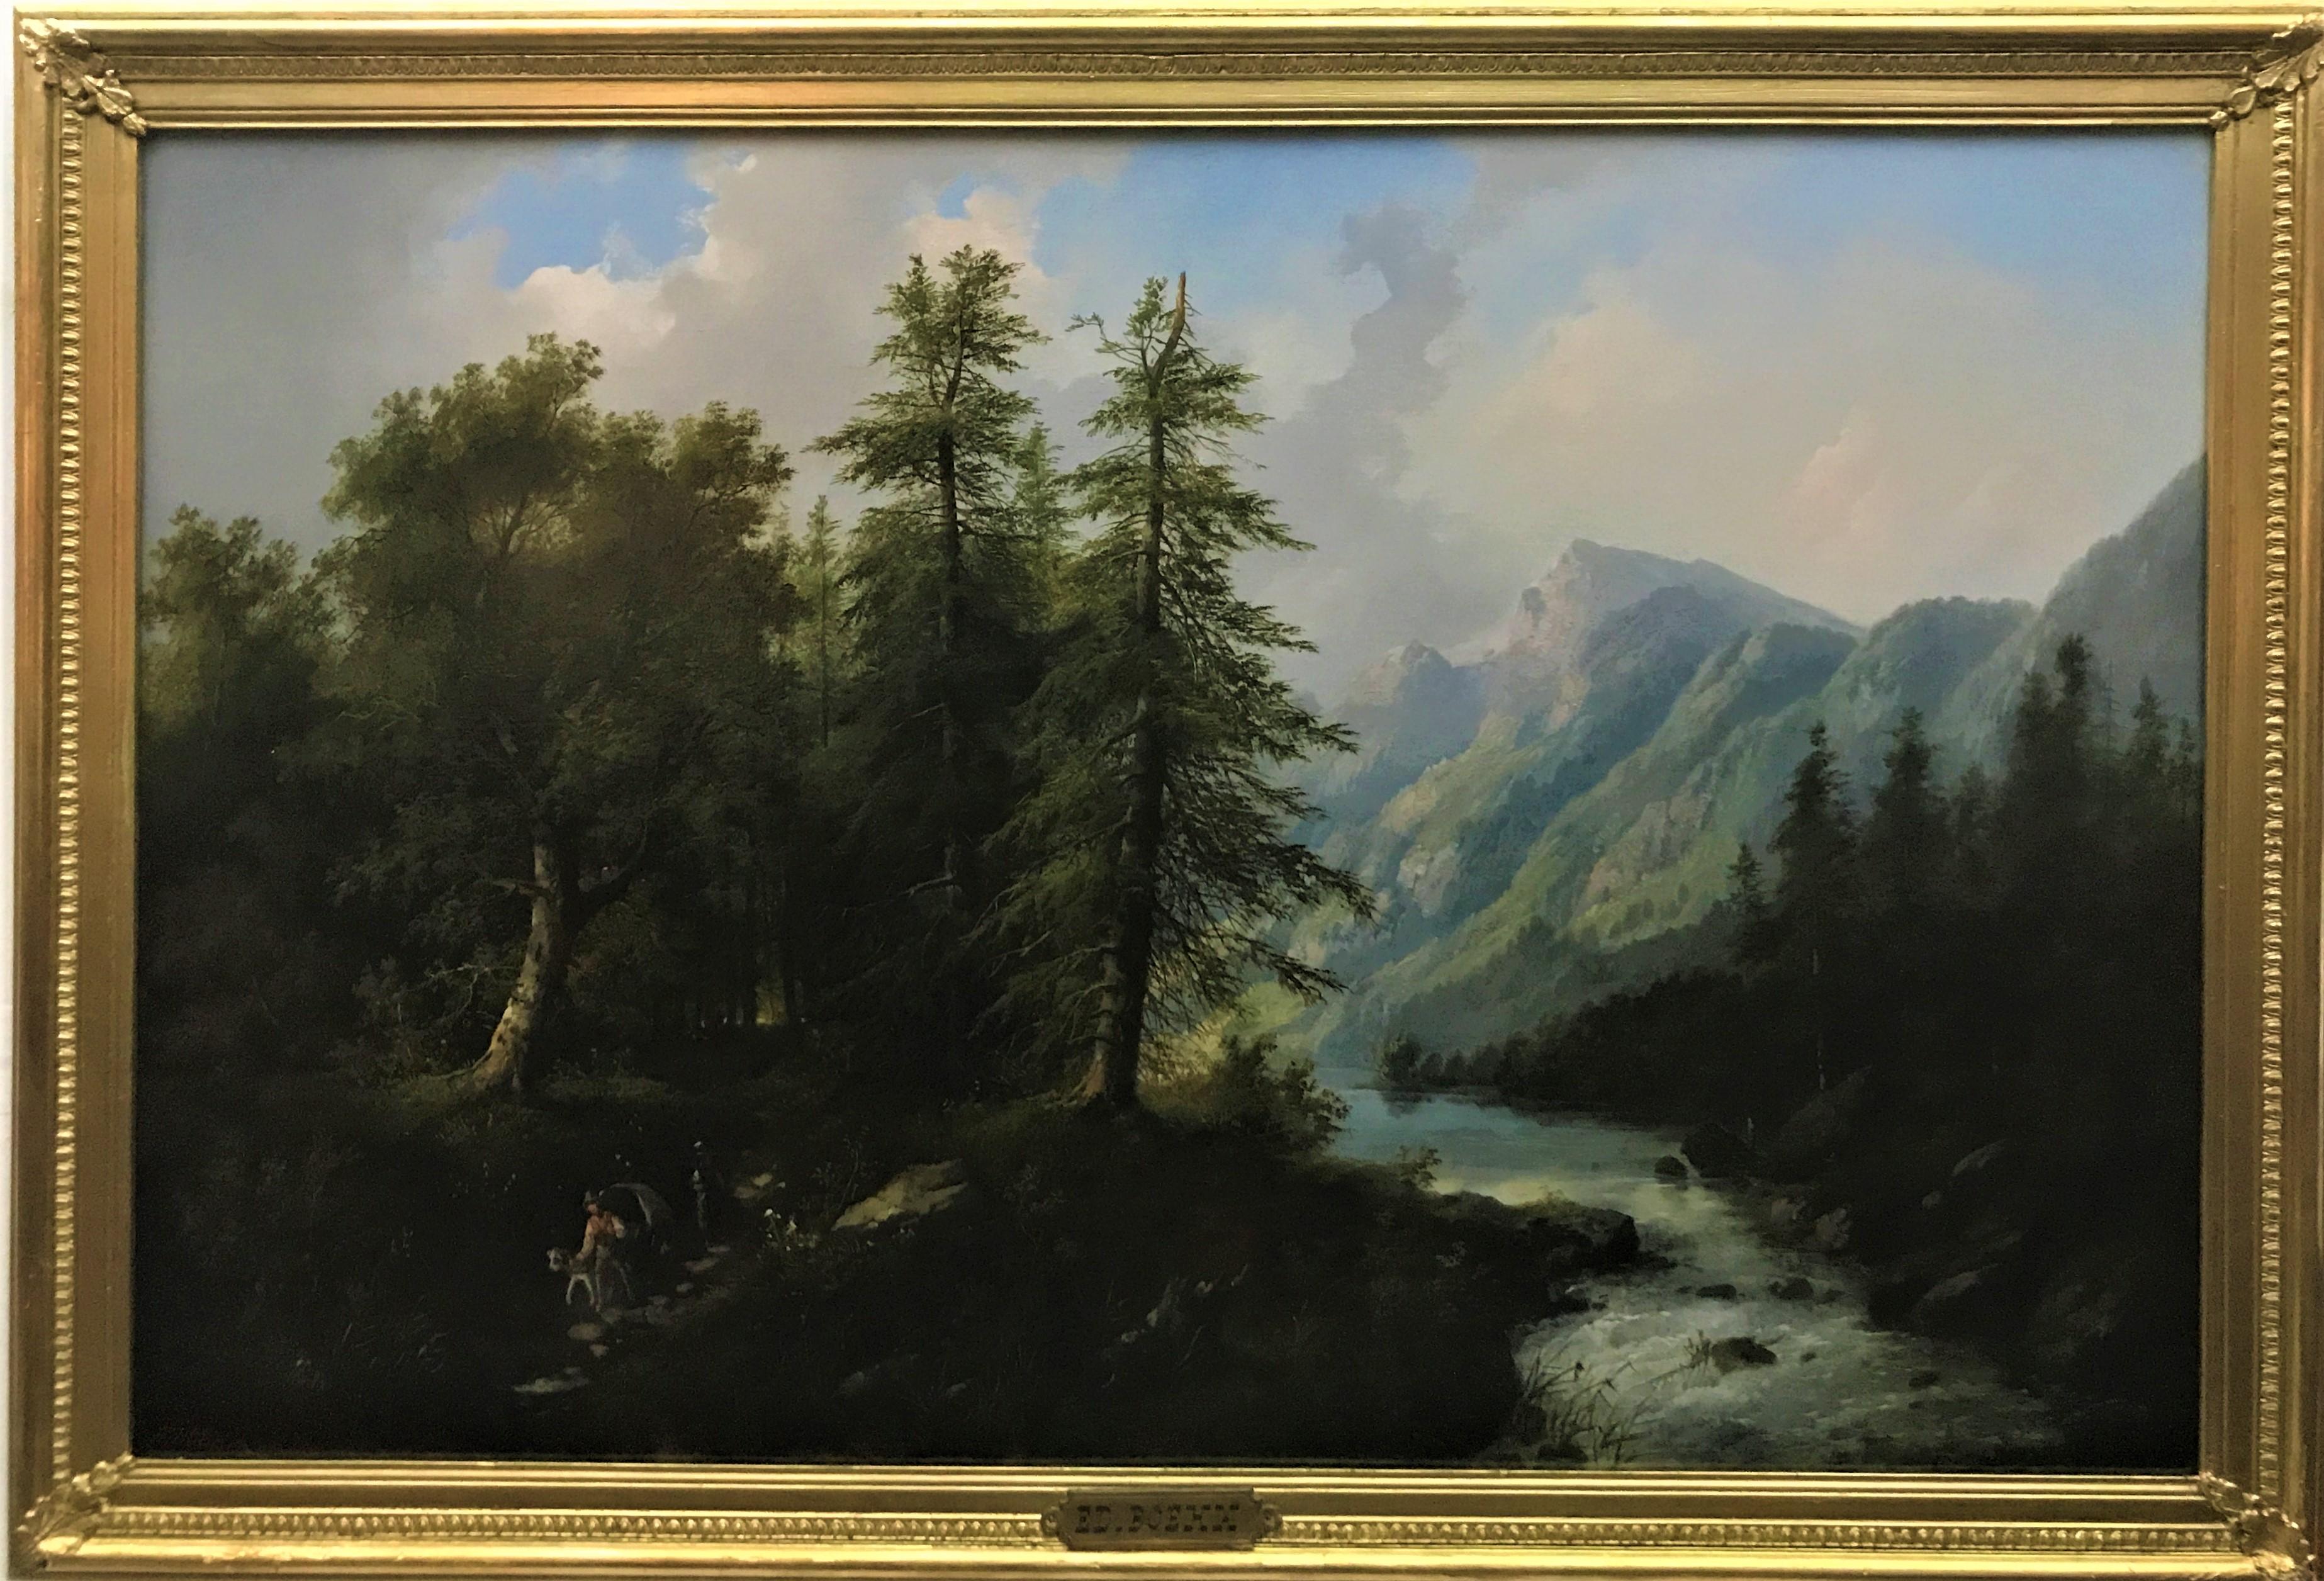 Swiss Landscape, original oil on canvas, c1870, Austrian realist painter - Painting by Eduard Boehm